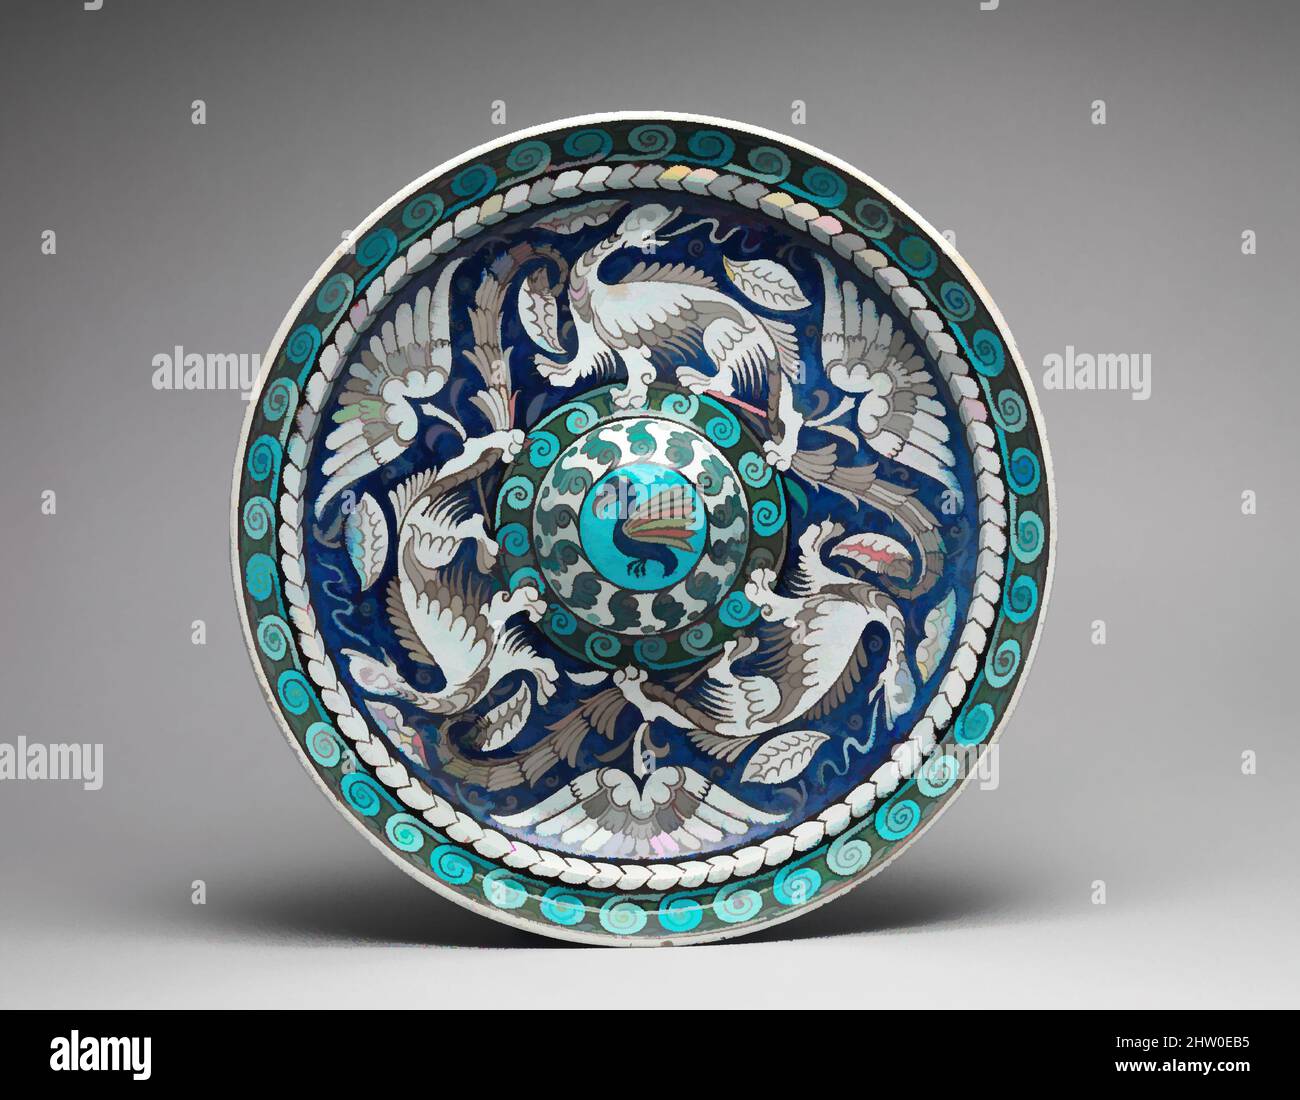 Kunst inspiriert von Plate, ca. 1890–1907, British (London), Keramik,  Durchmesser: 16 Zoll x Tiefe: 2 1/2 Zoll (40,6 x 6,4 cm), Keramik-Töpferei,  bekannt für seine blau-türkisfarbene Keramik im persischen Stil, inspiriert  von